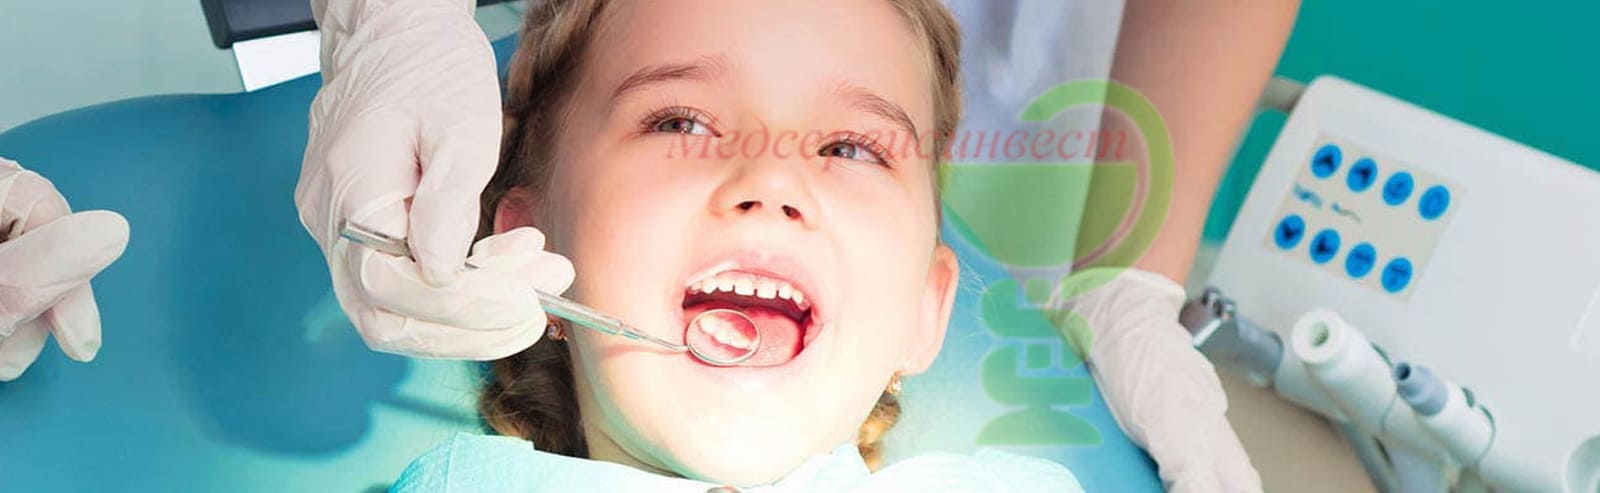 Детская стоматология в Минске, платный стоматолог, цены зубы лечение